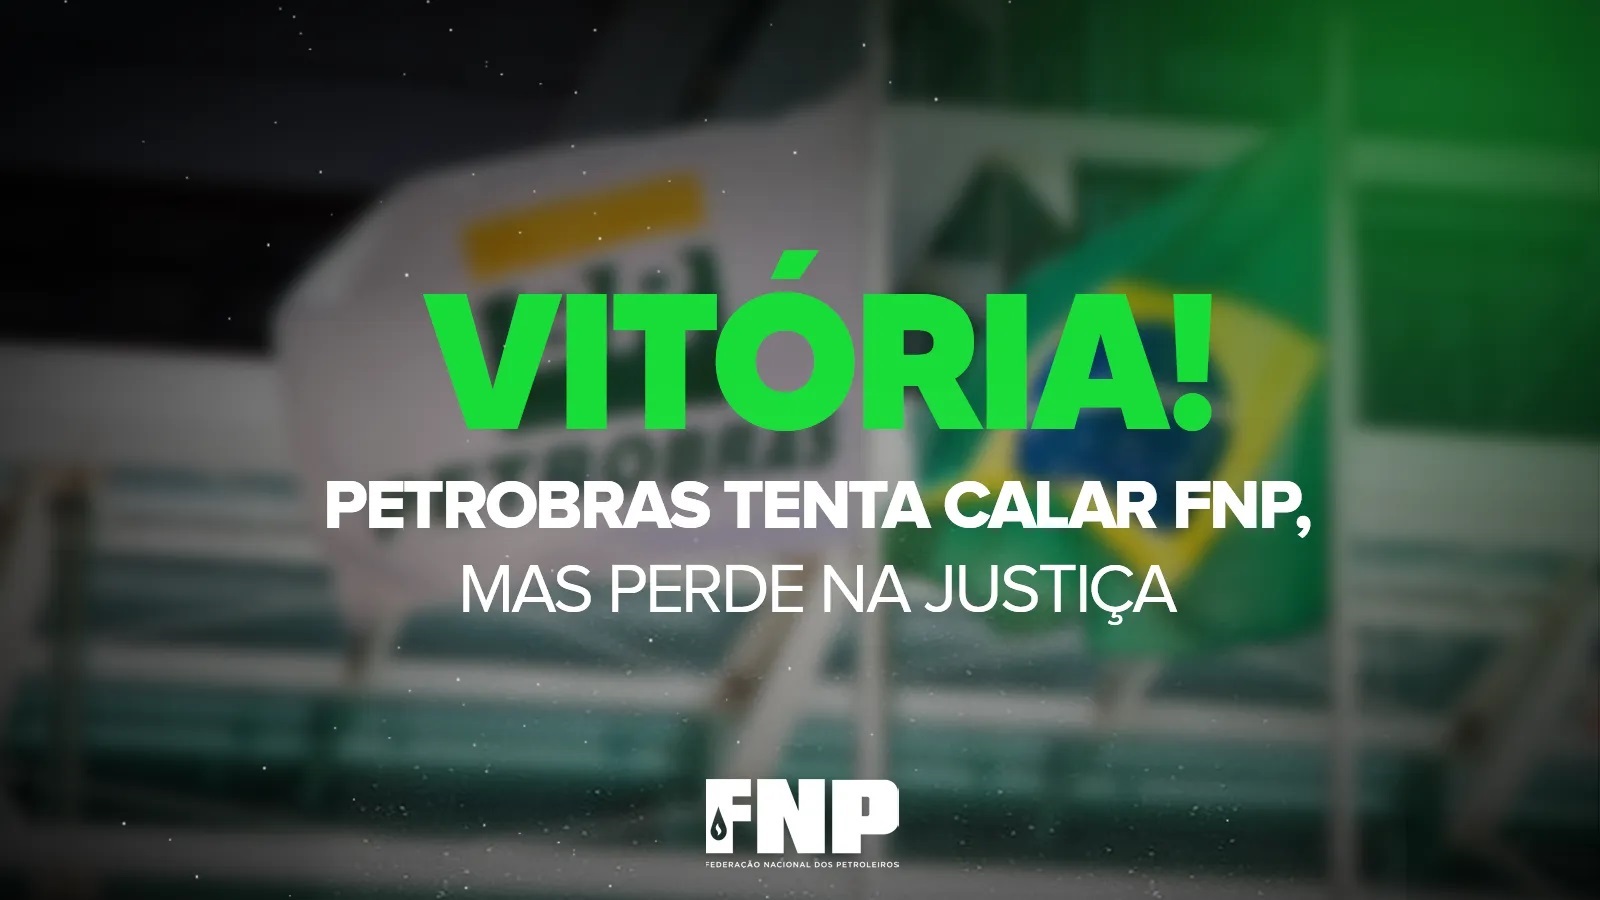 Gestão da Petrobrás tenta censurar material da Federação Nacional dos Petroleiros, mas justiça impede